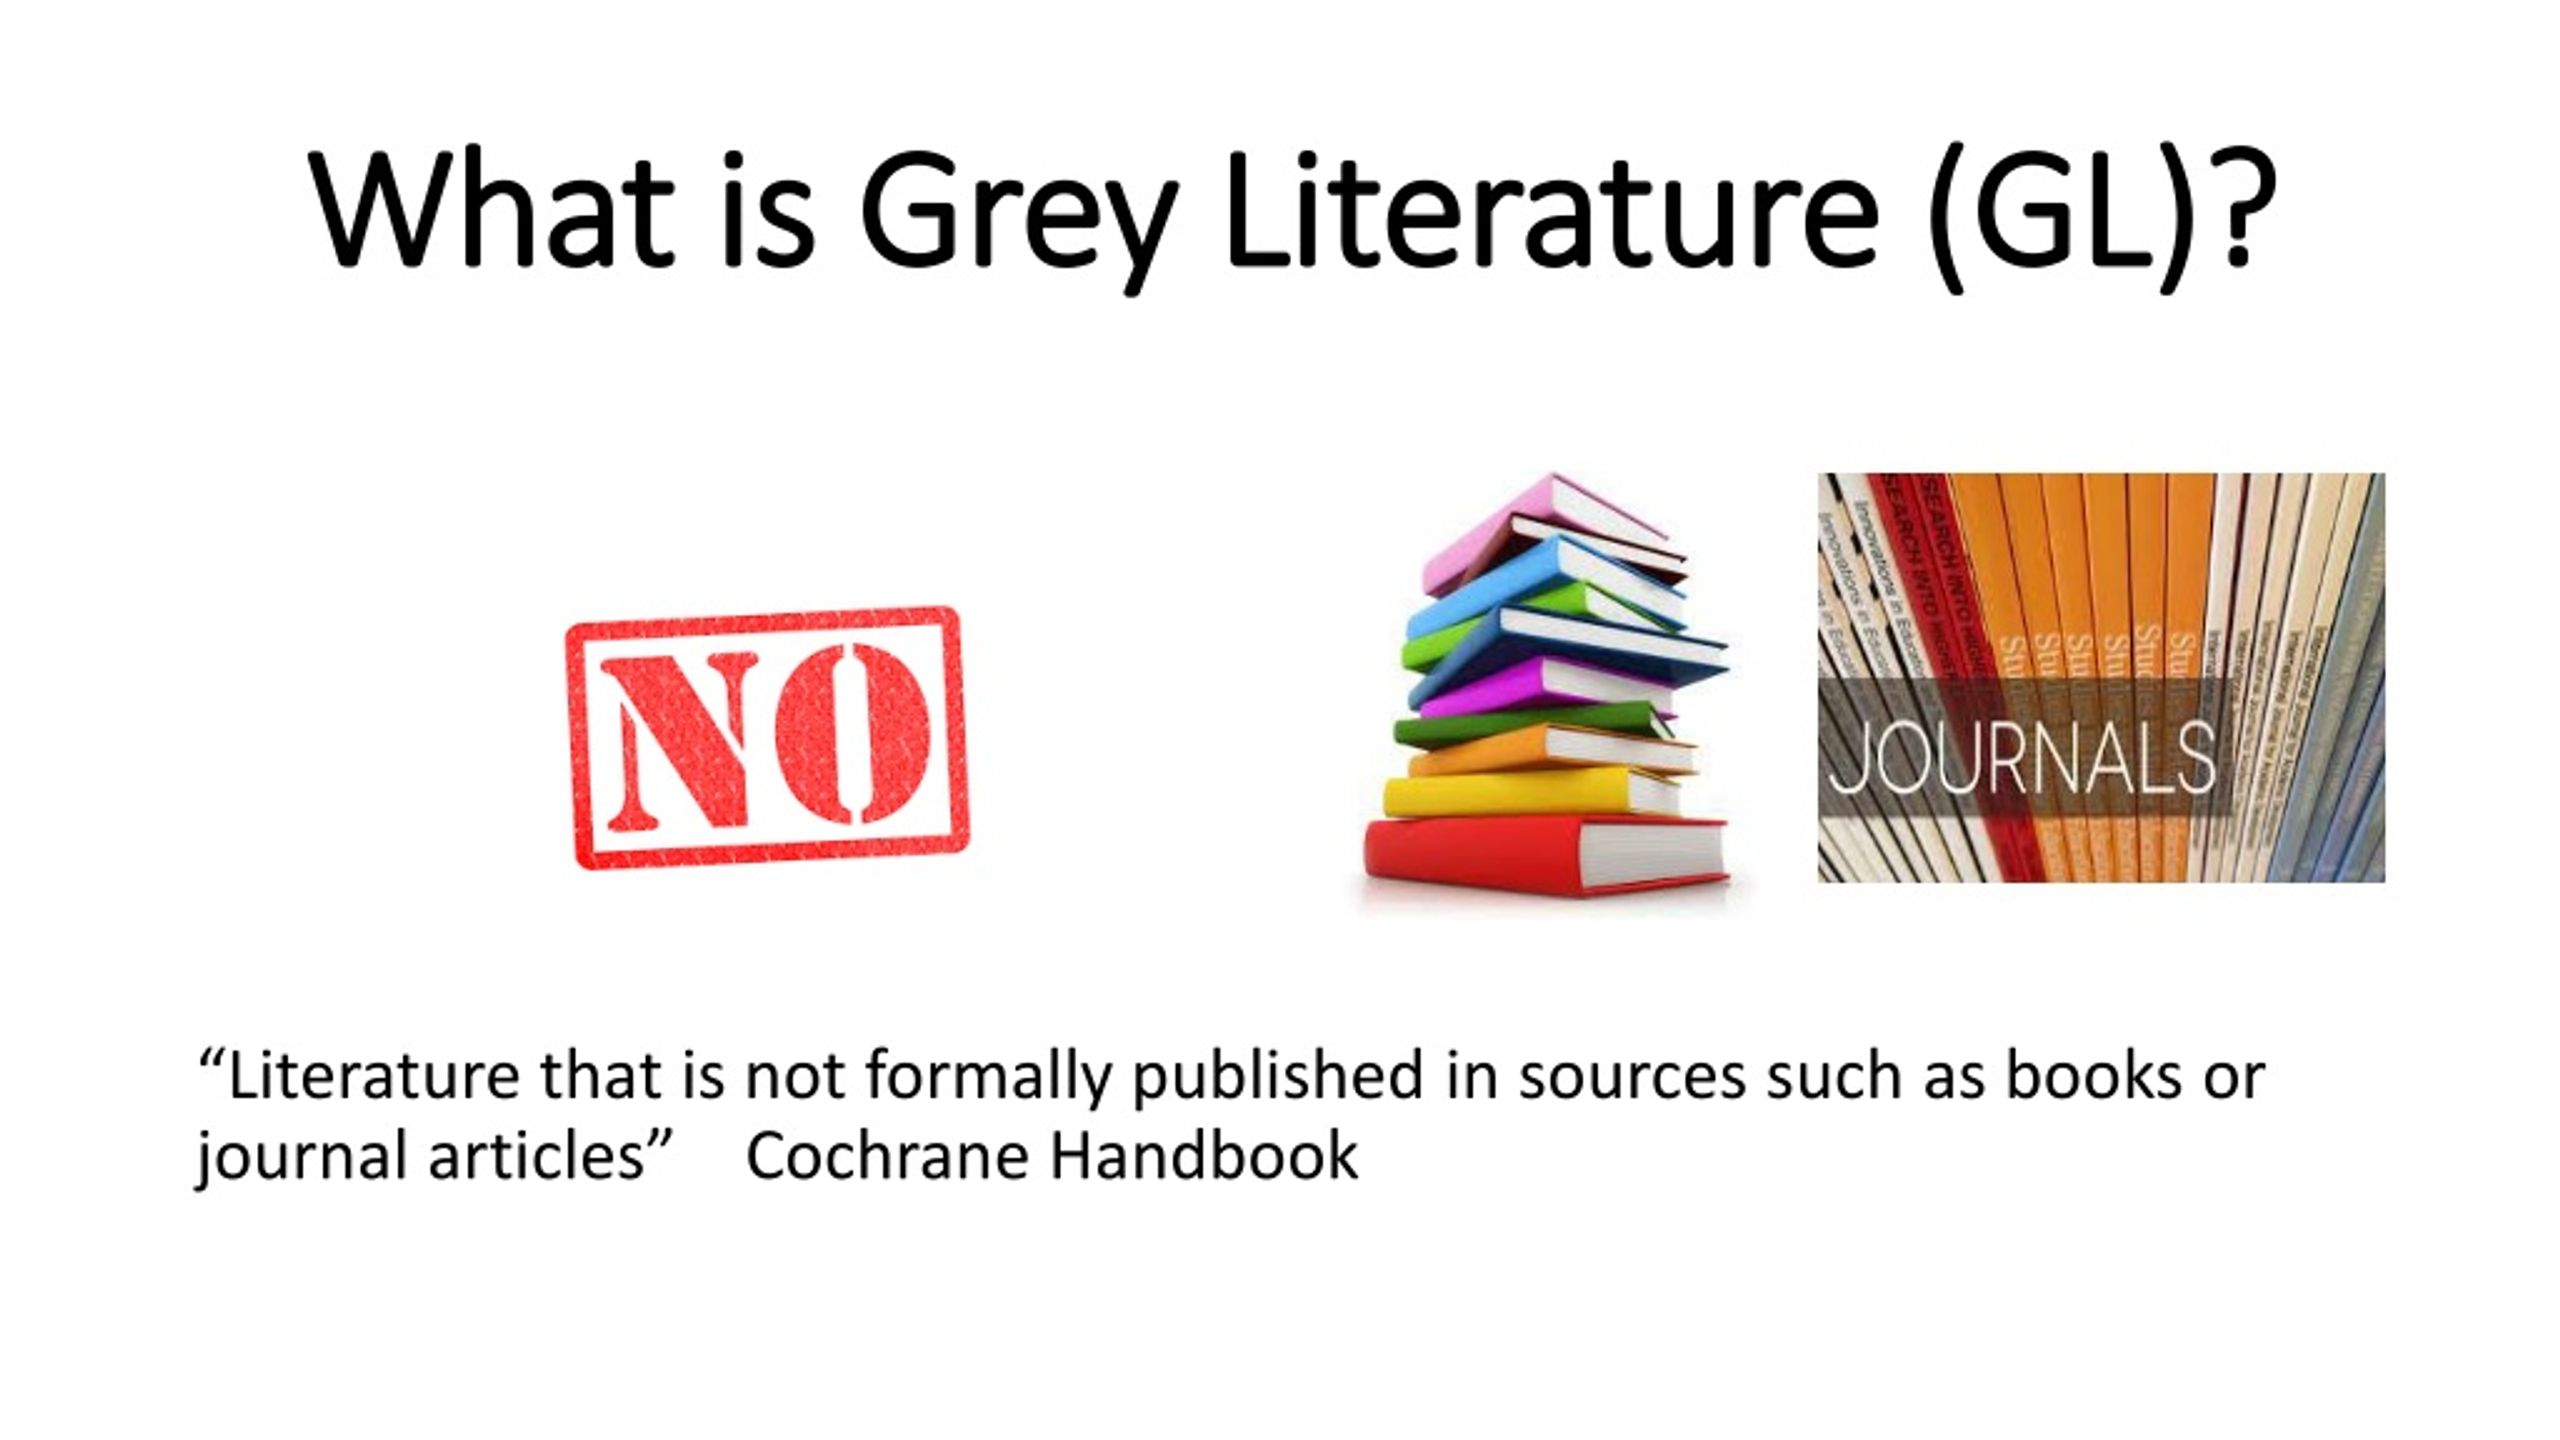 are case studies grey literature